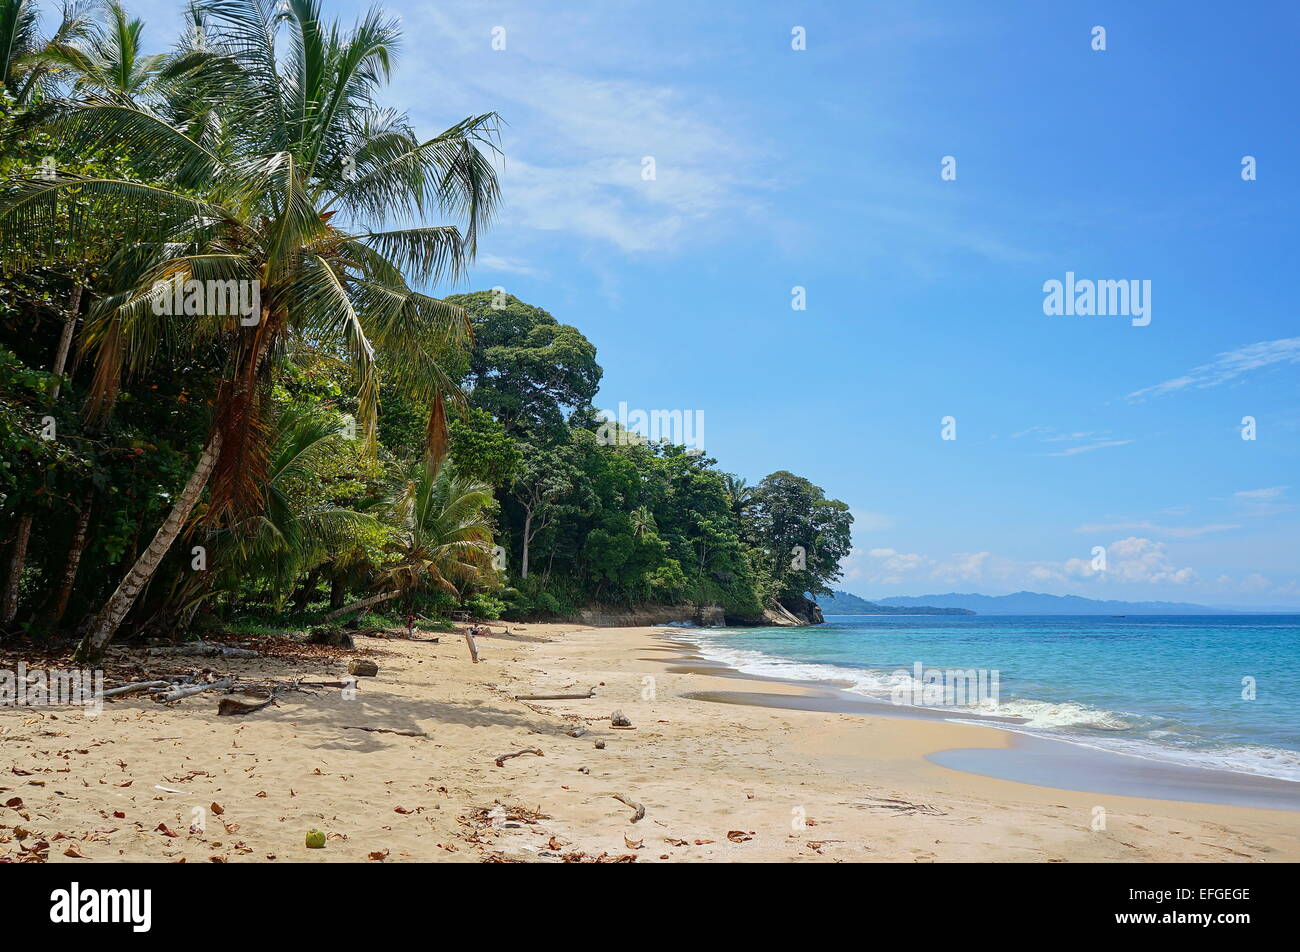 Spiaggia caraibica con lussureggiante vegetazione tropicale in Costa Rica, Punta Uva, Puerto Viejo de Talamanca, America Centrale Foto Stock